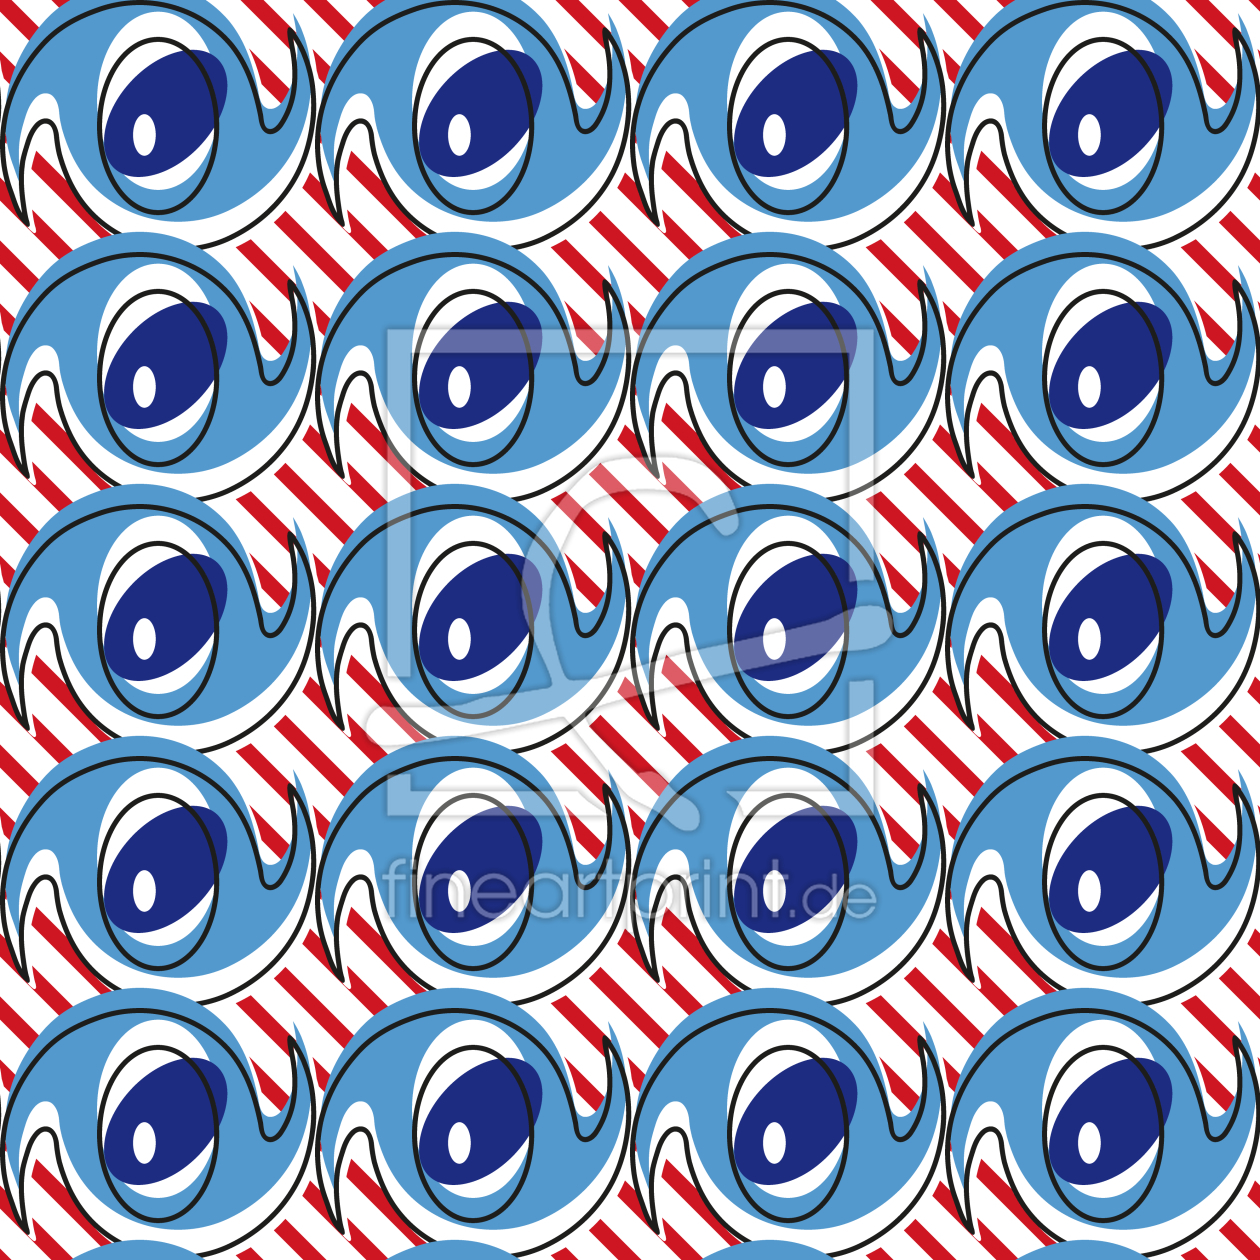 Bild-Nr.: 9007493 Verrückte Augen auf Streifen erstellt von patterndesigns-com